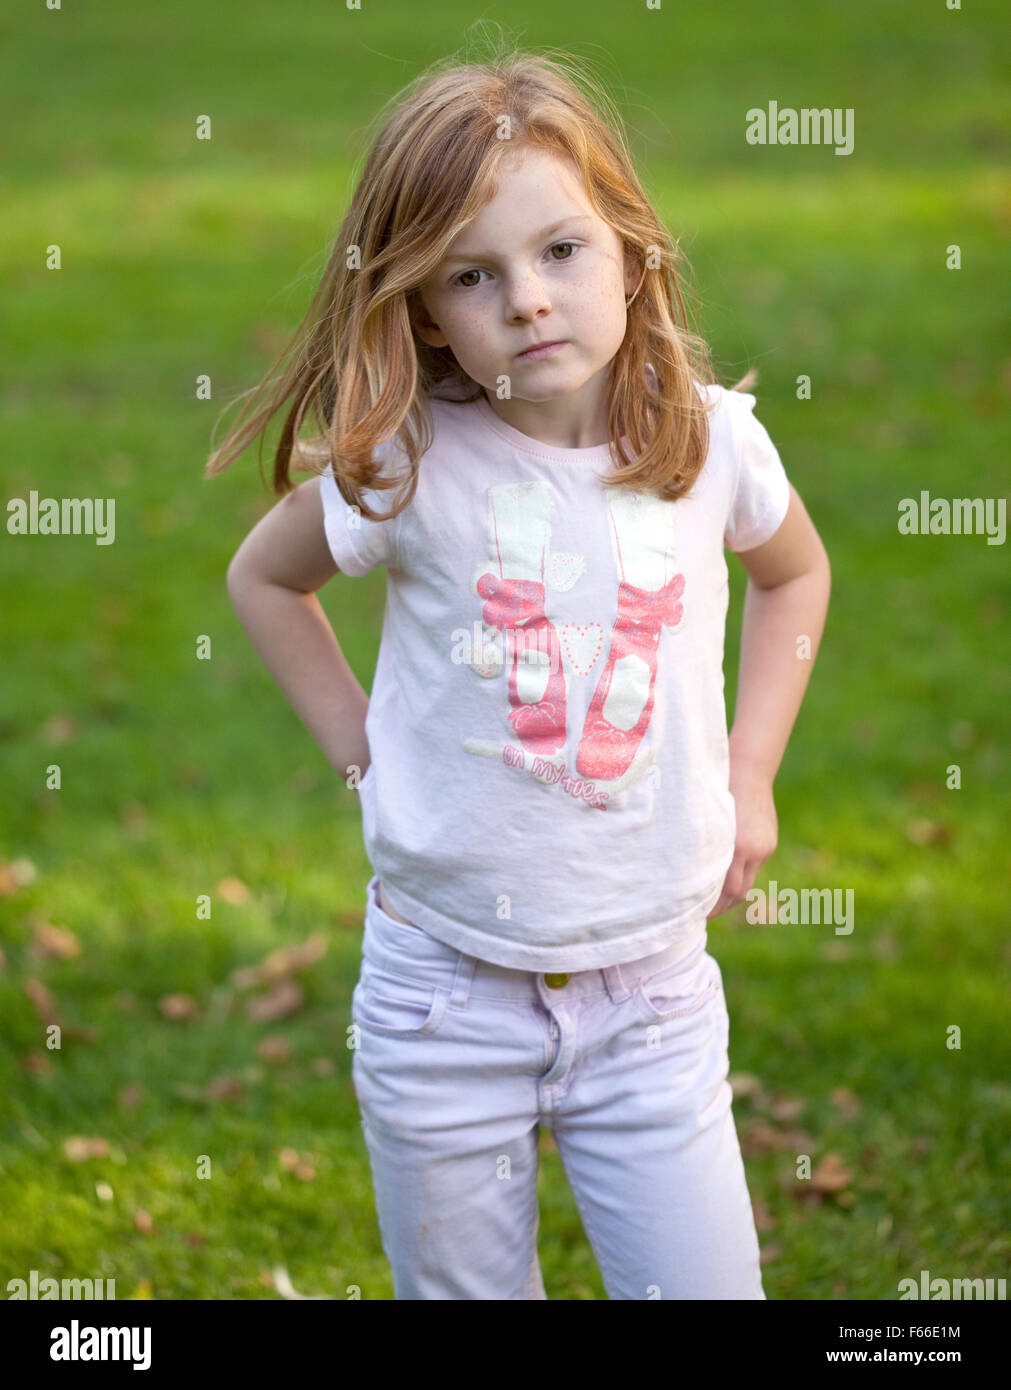 Una giovane ragazza con i capelli di zenzero che contrastano con il verde lussureggiante erba del parco, ha girato improvvisamente verso la telecamera. Foto Stock